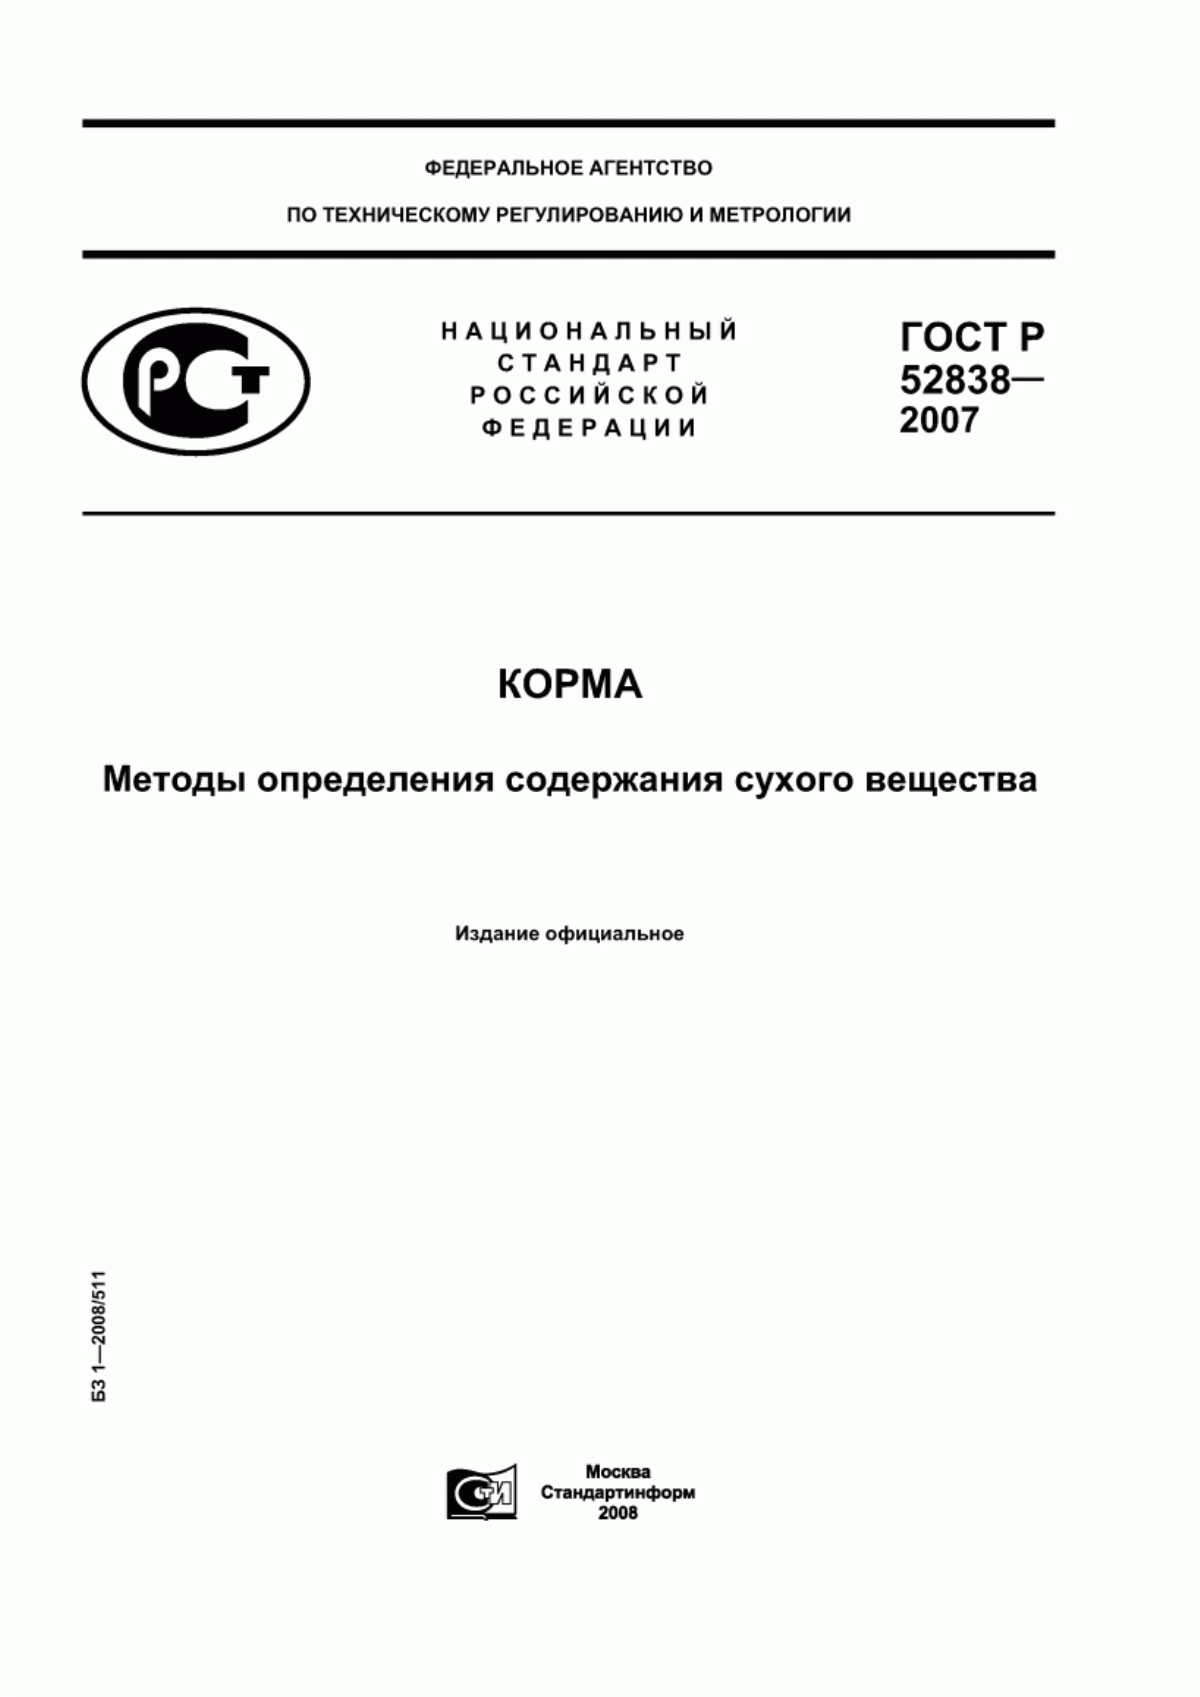 ГОСТ Р 52838-2007 Корма. Методы определения содержания сухого вещества